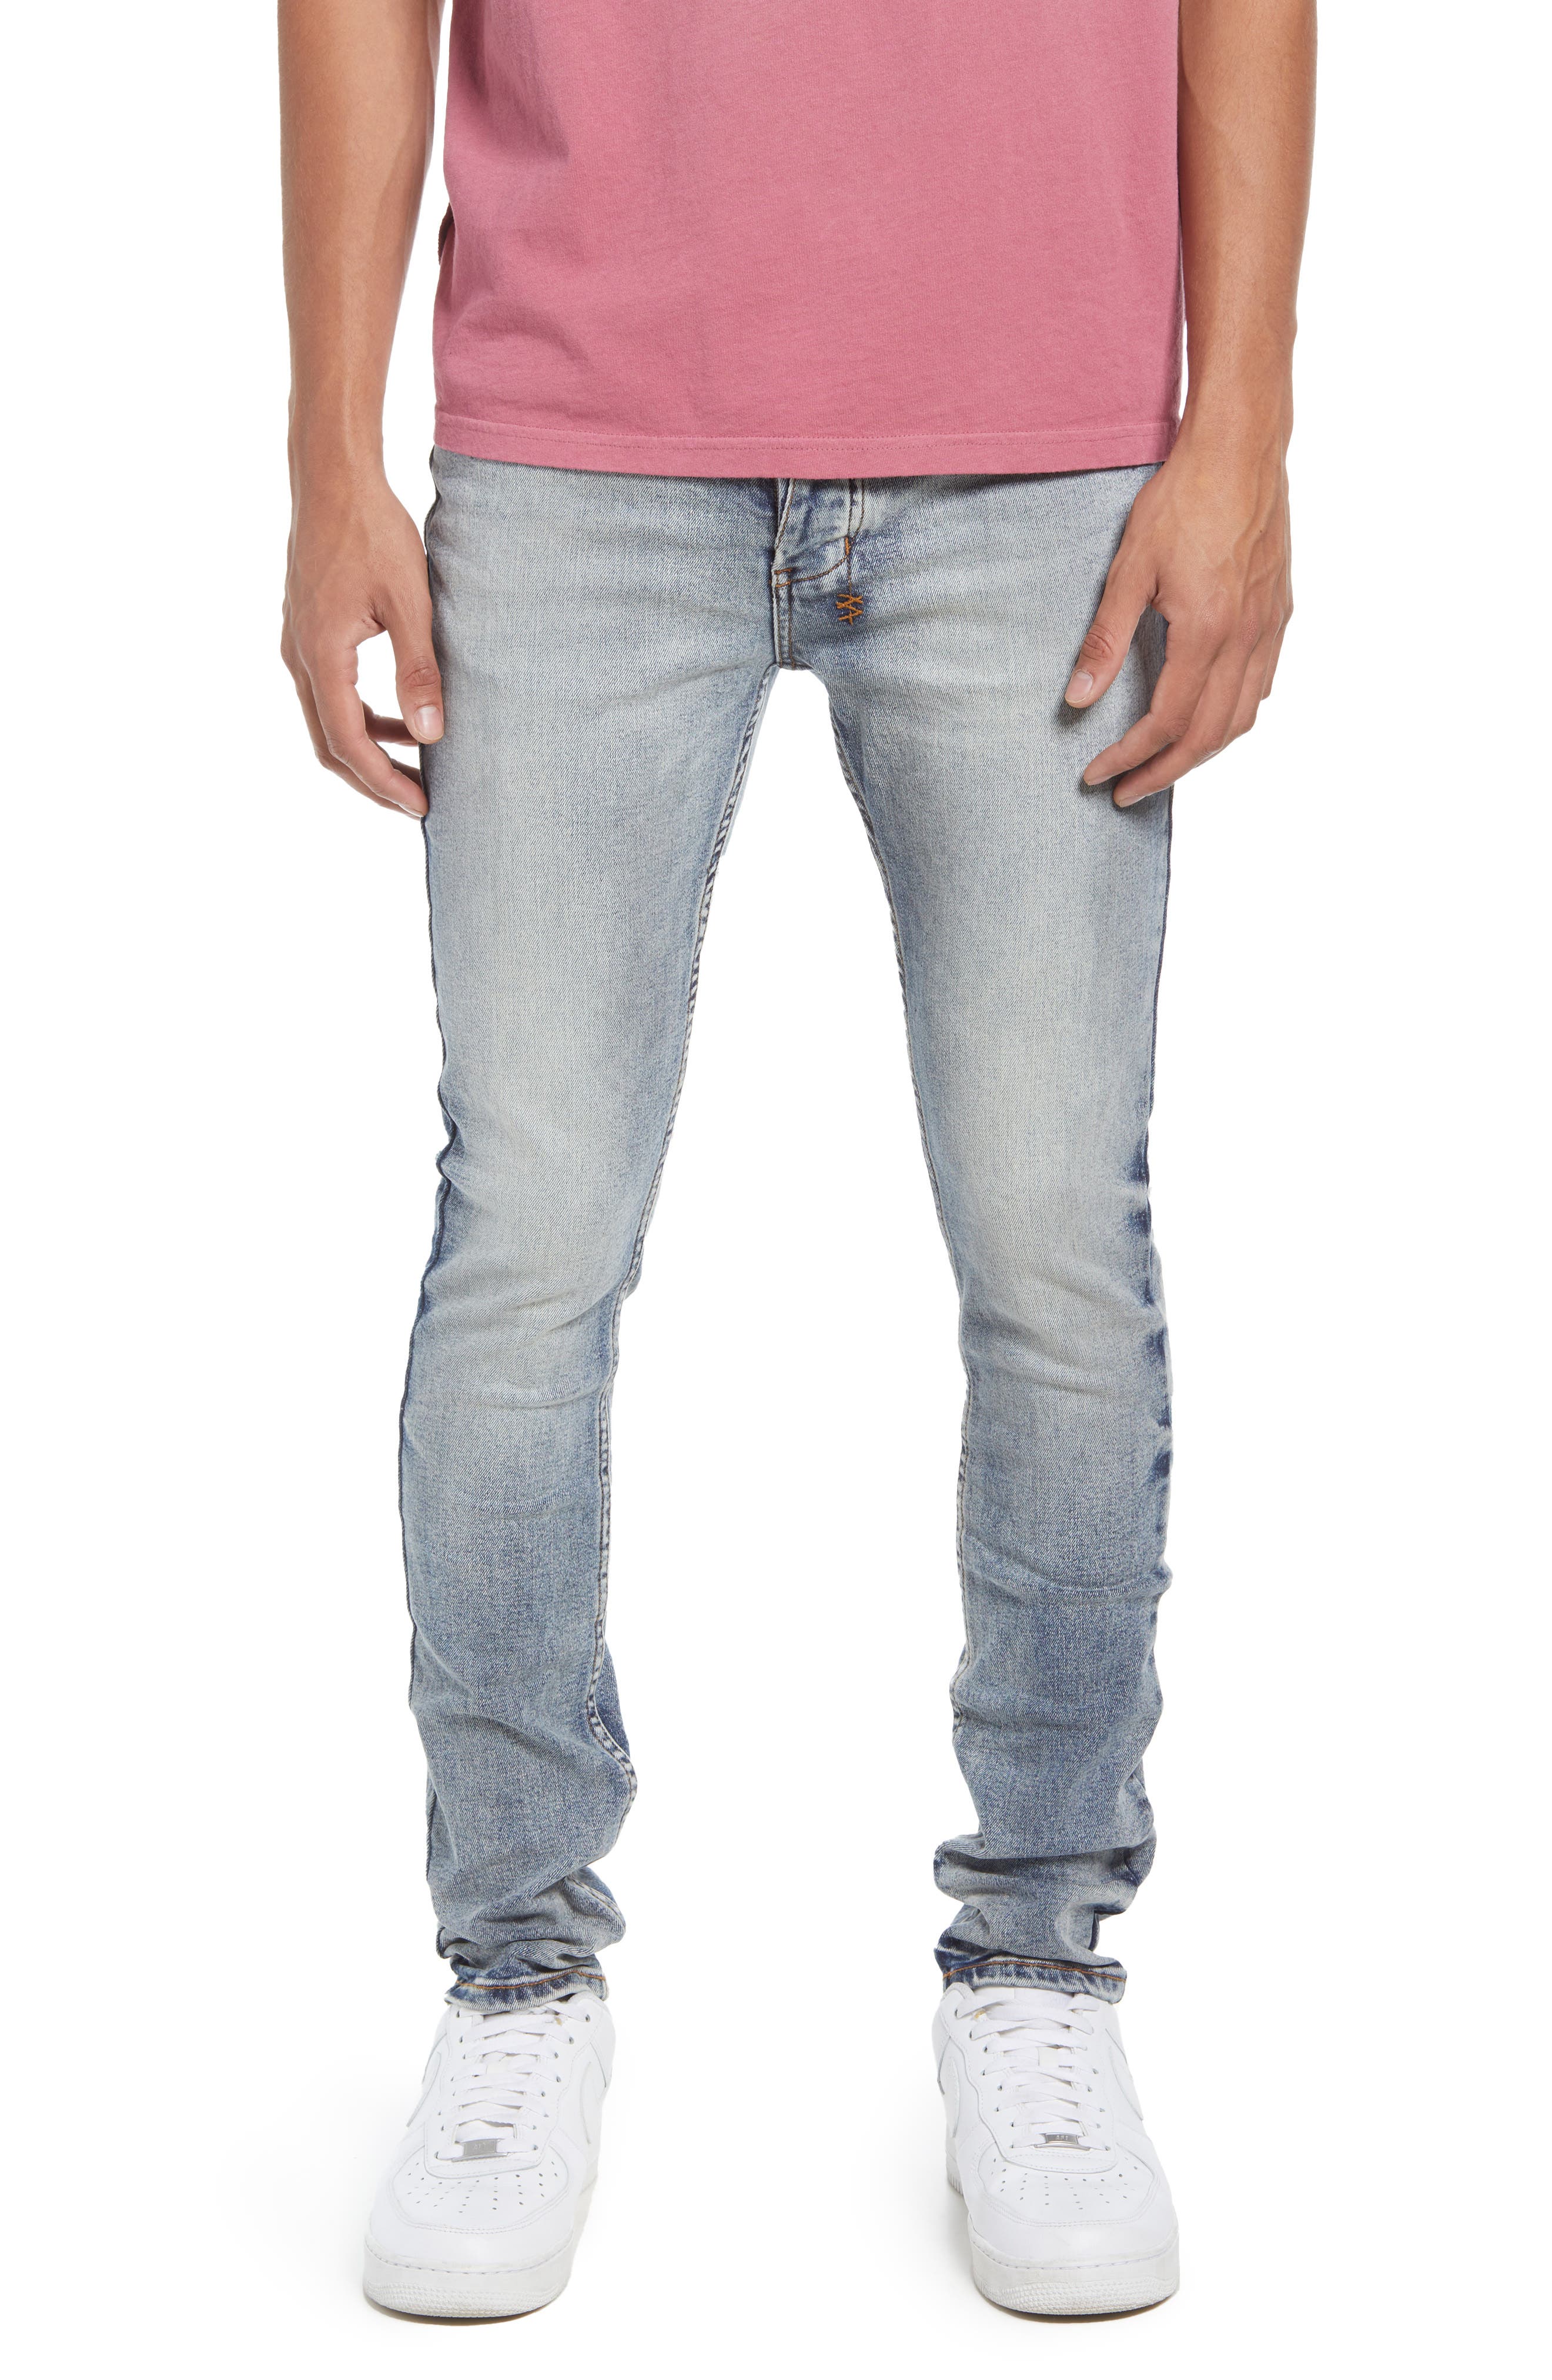 Ksubi Van Winkle Half Way Skinny Jeans in Denim at Nordstrom, Size 34 X 32